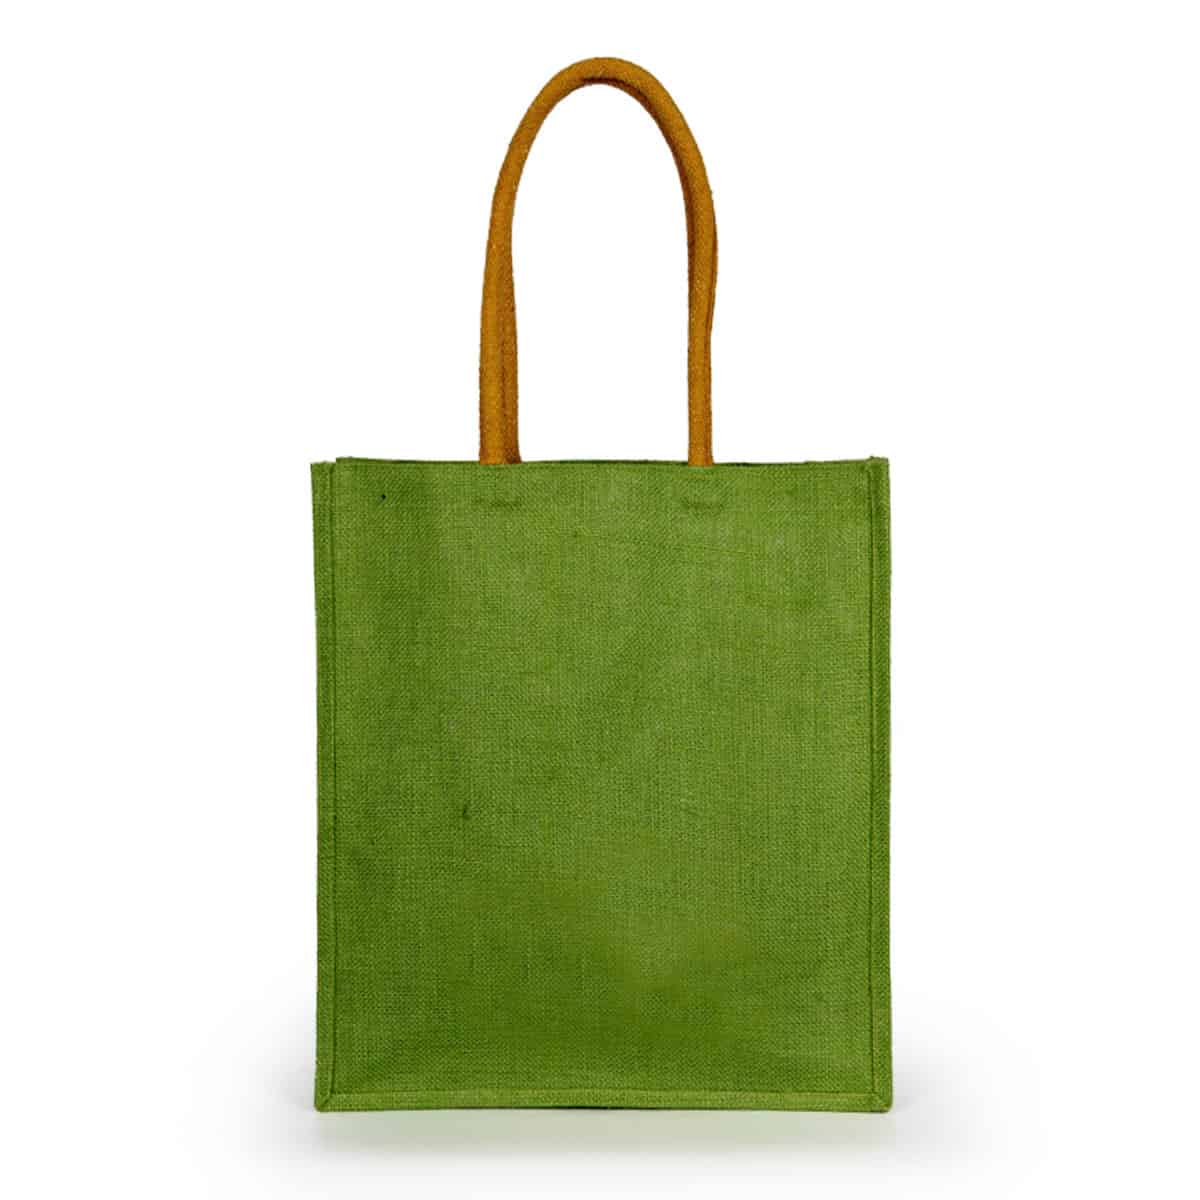 Jute Bags Wholesale Suppliers in UAE | Jute bags With Printing Options